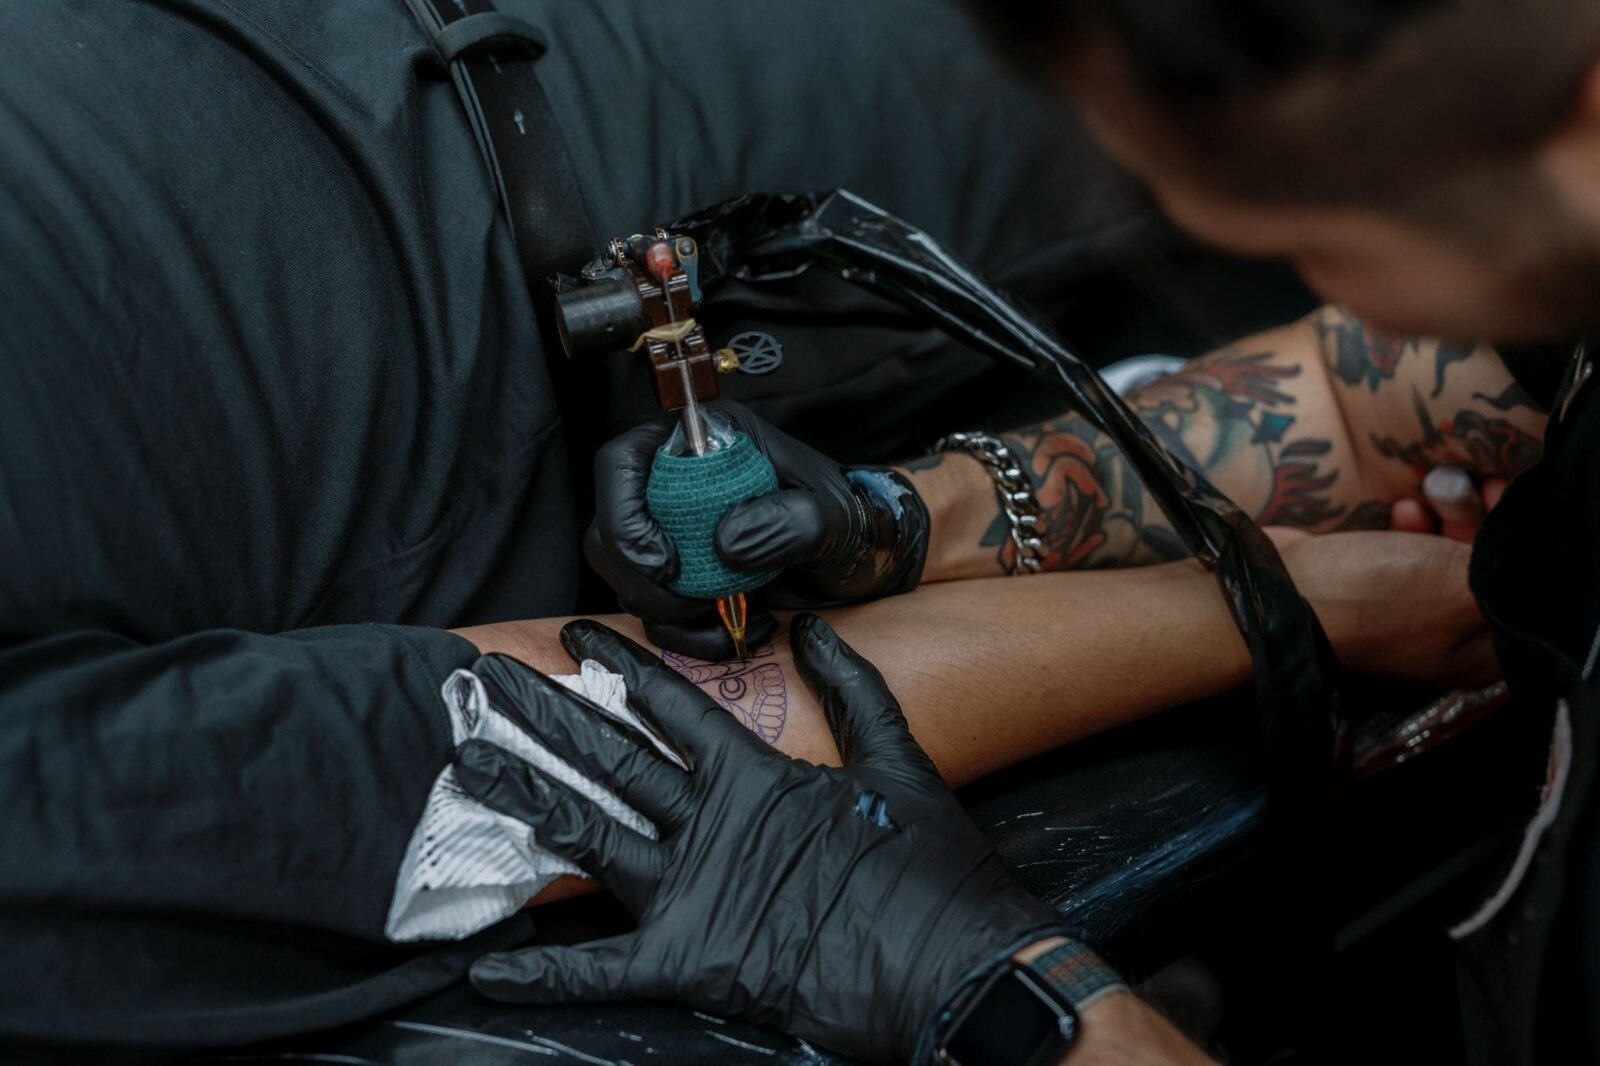 Tattoo and tattoo gun